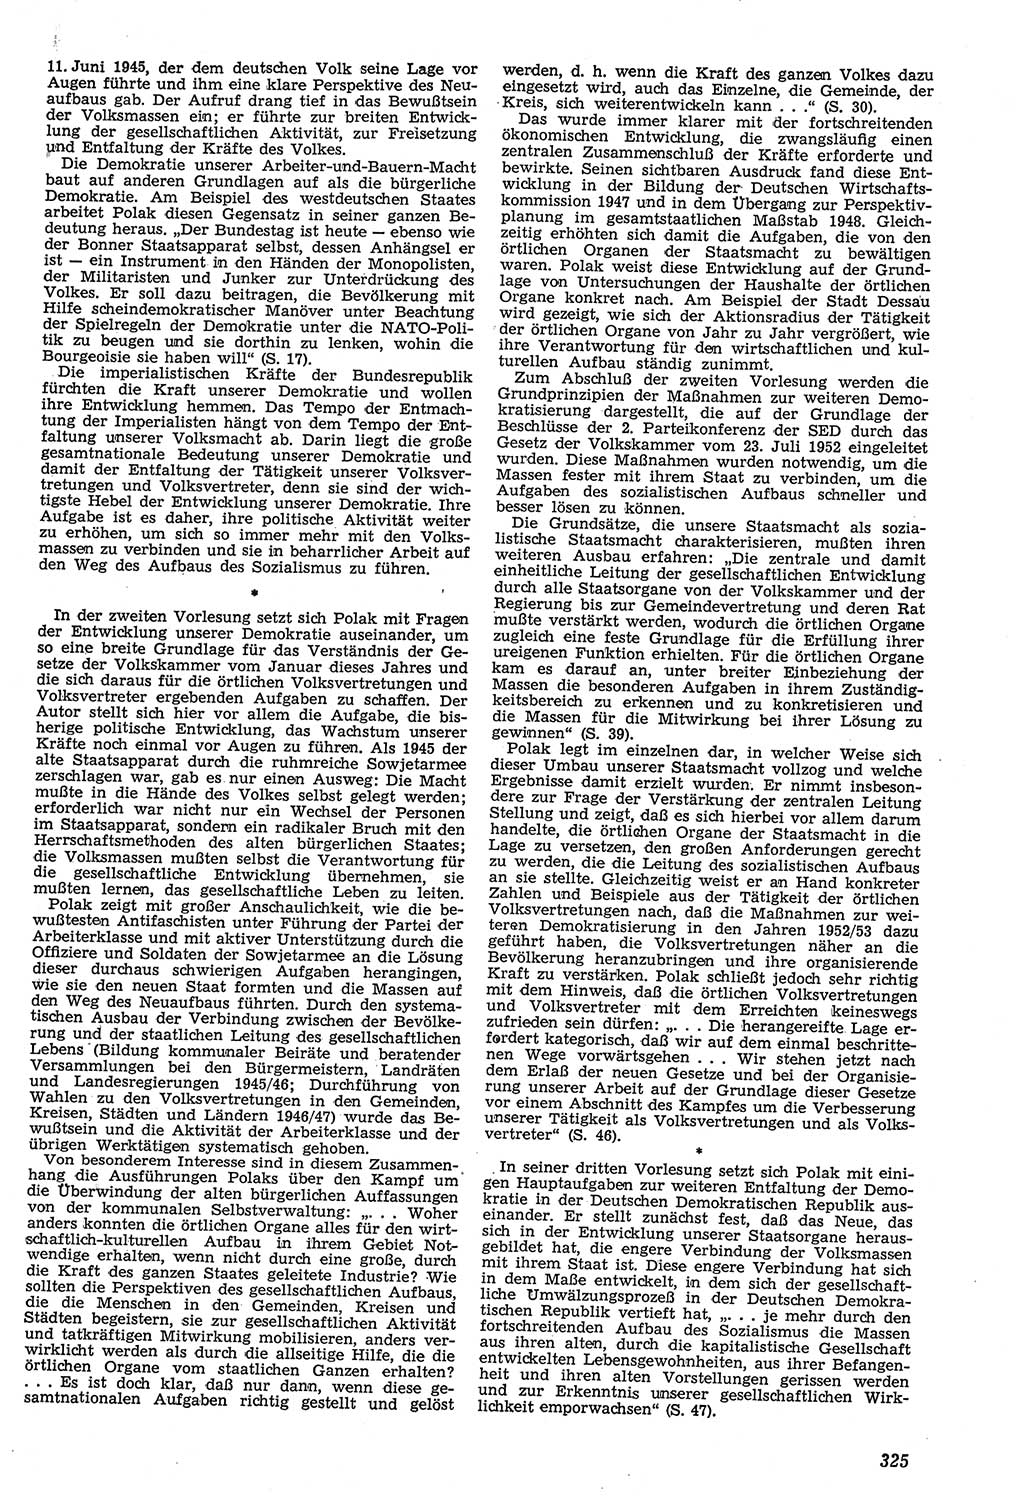 Neue Justiz (NJ), Zeitschrift für Recht und Rechtswissenschaft [Deutsche Demokratische Republik (DDR)], 11. Jahrgang 1957, Seite 325 (NJ DDR 1957, S. 325)